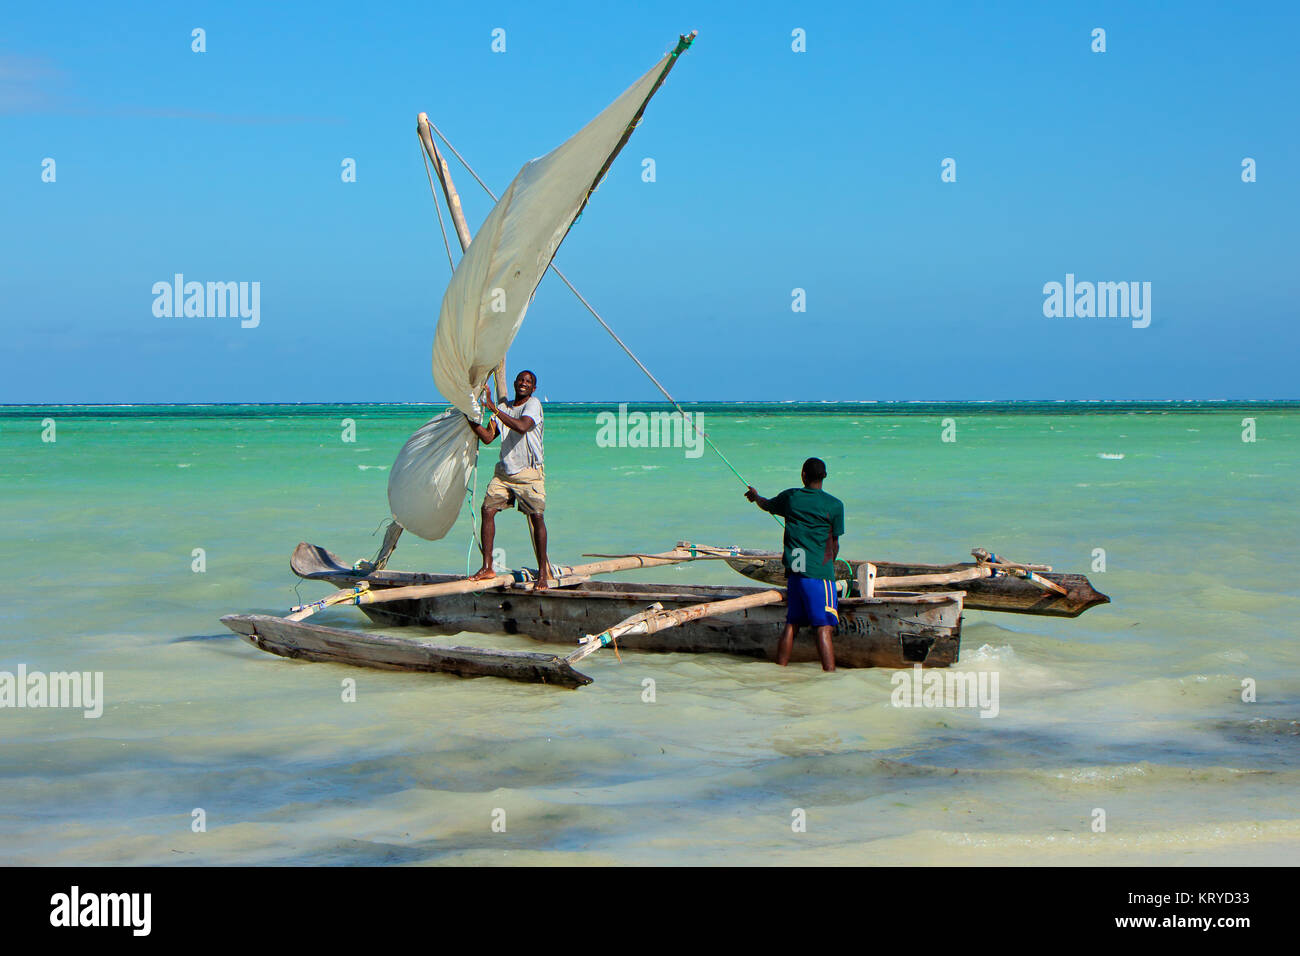 Sansibar, Tansania - Oktober 28, 2014: Unbekannter Männer starten eine hölzerne Segelboot (dhau) auf das klare, türkisfarbene Wasser der Insel Sansibar Stockfoto